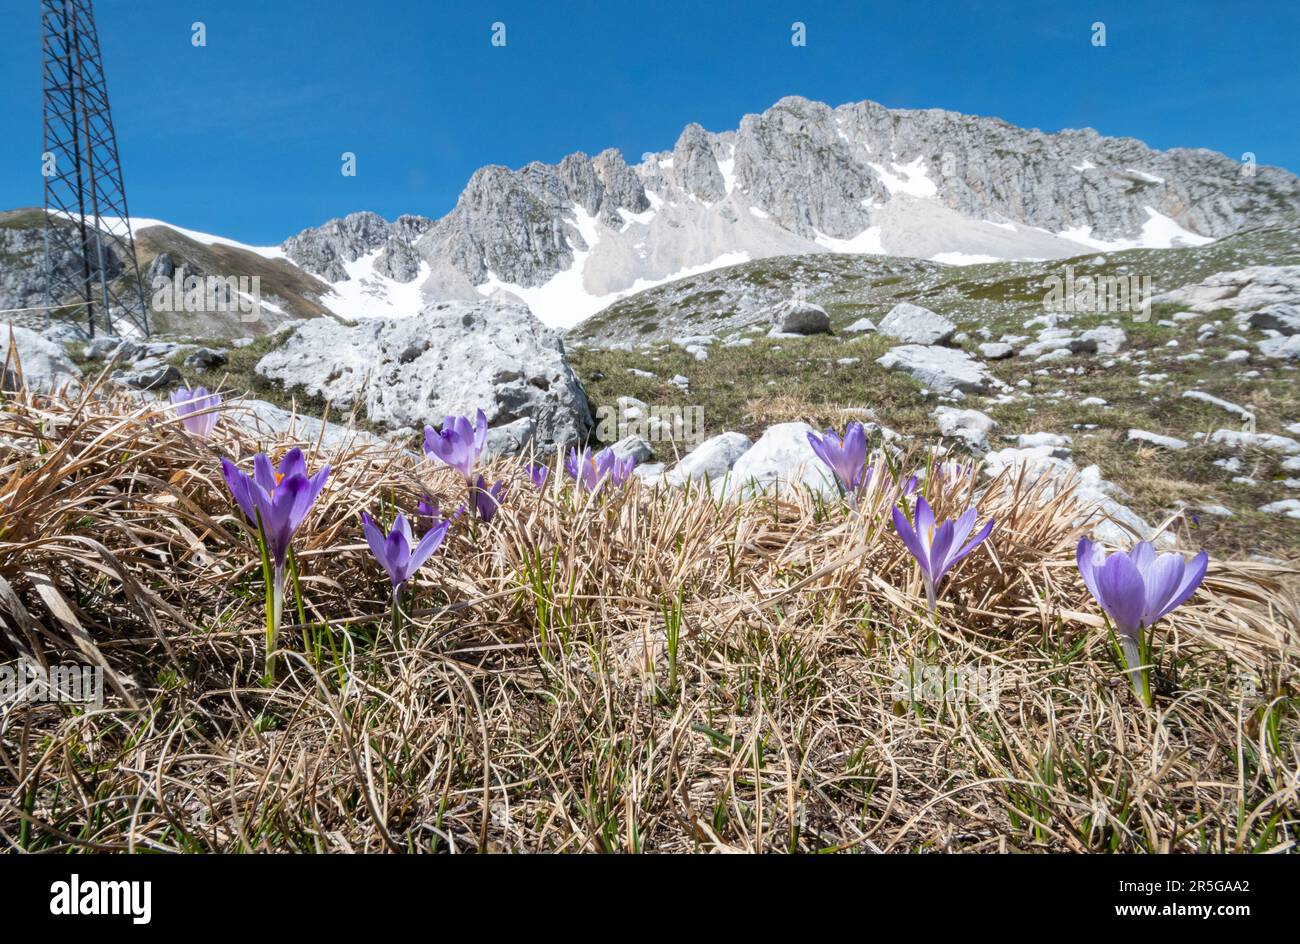 Wilde Krokusblüten (Frühlingskrokusblüten), die in einer wunderschönen natürlichen Landschaft im Alpenraum in den Abruzzen des Apenningebirges in Italien, Europa wachsen Stockfoto